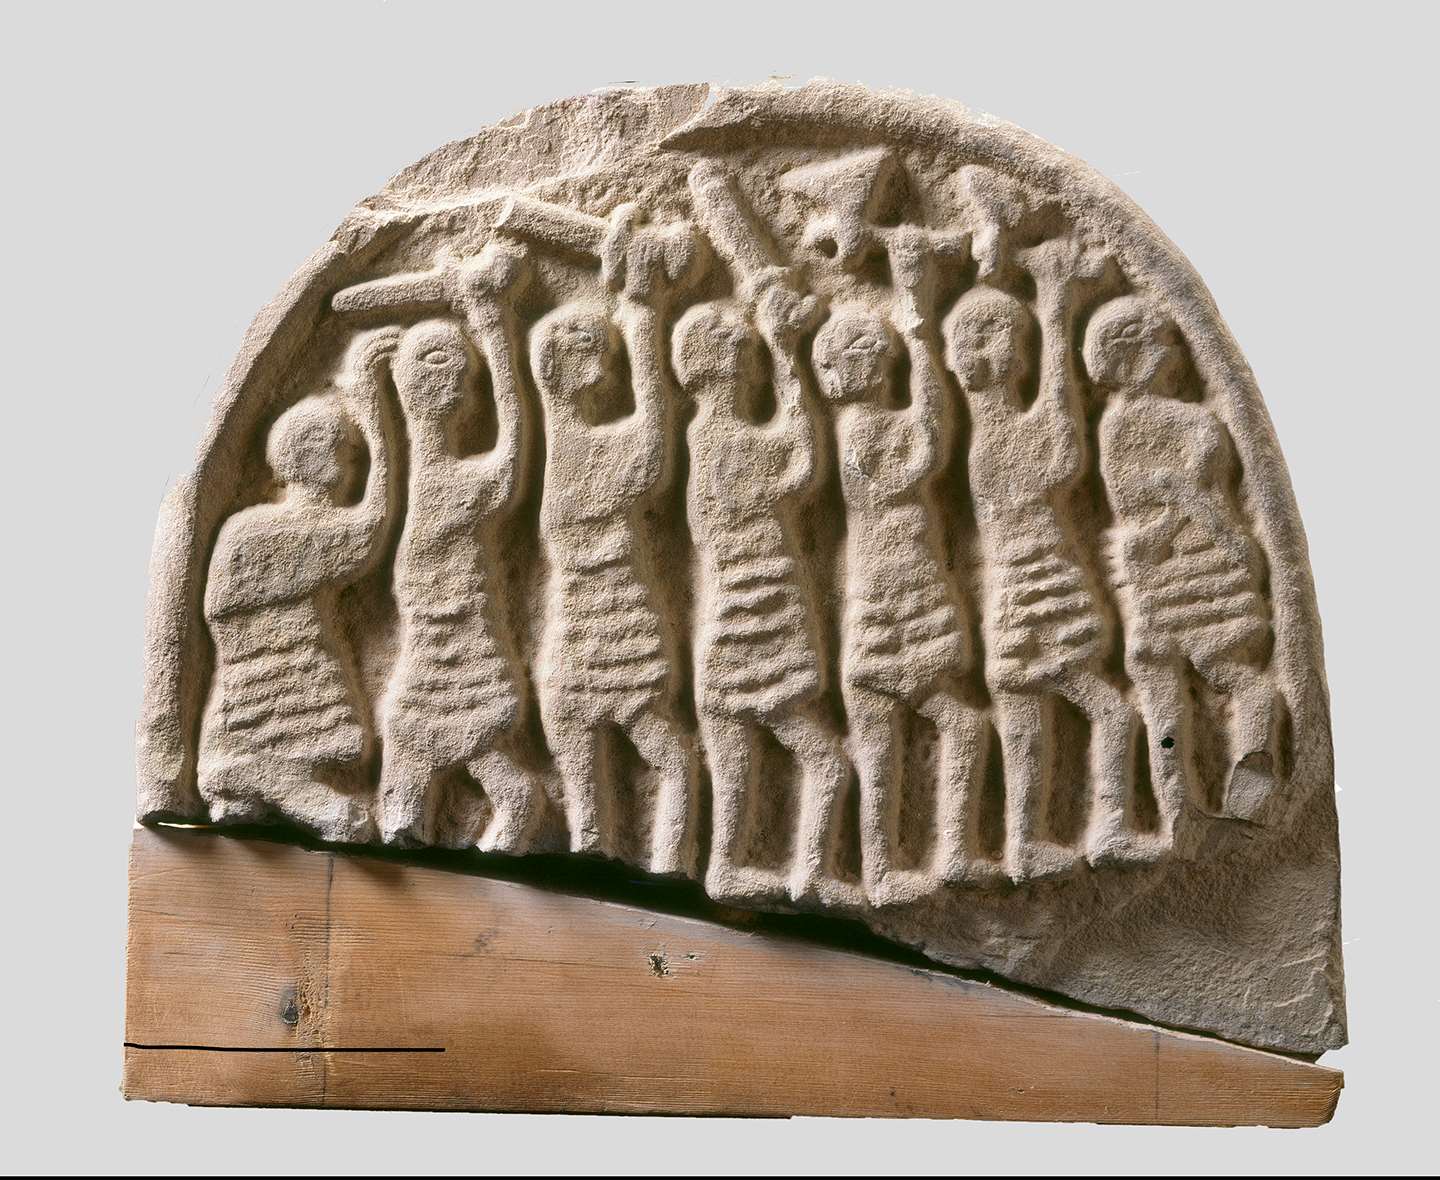 林迪斯法恩石 又称: 维京海盗石 by 未知艺术家  - 9世纪 英格兰遗产委员会